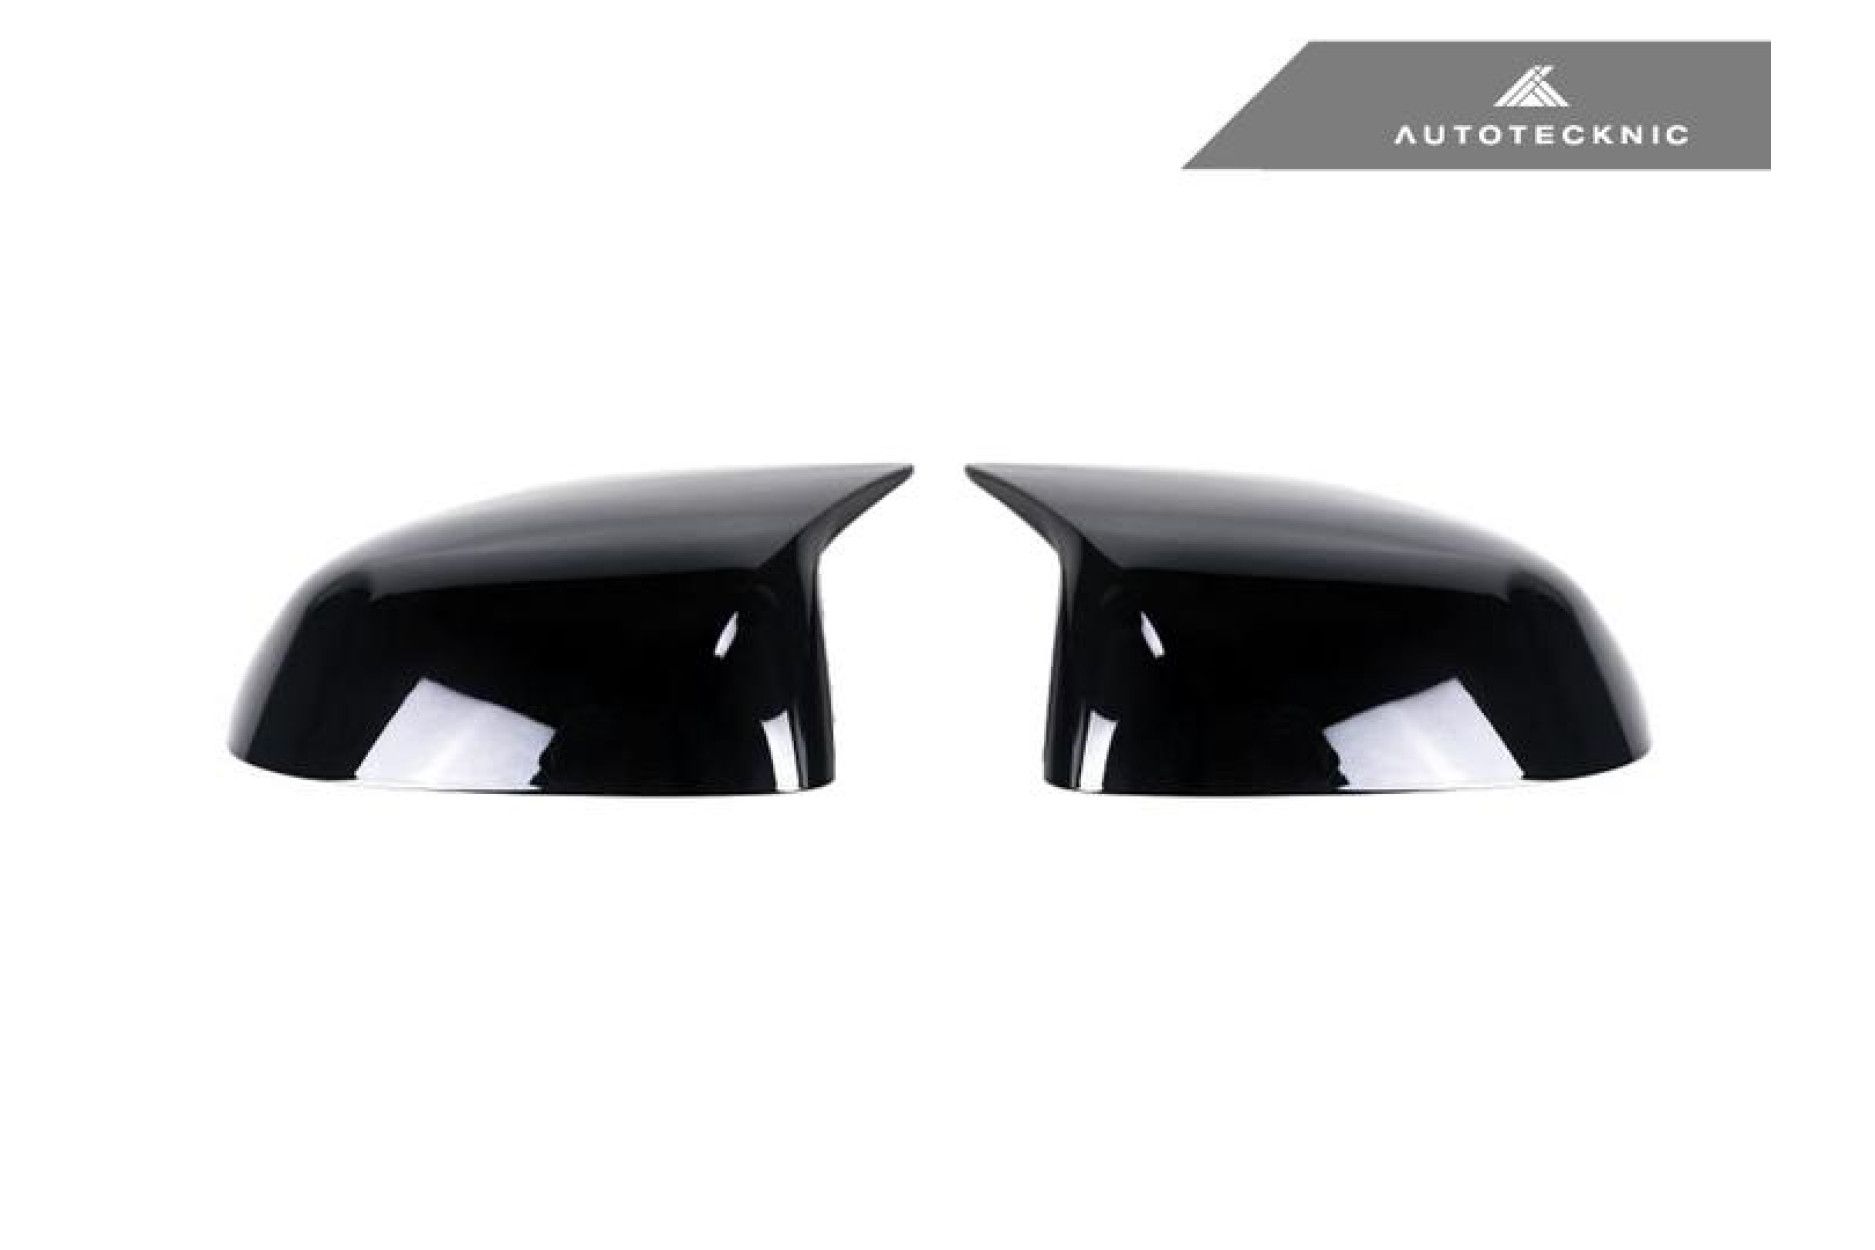 AutoTecknic Spiegelkappen für G-Serie X3 X4 X5 X6 X7 schwarz glänzend (2) 